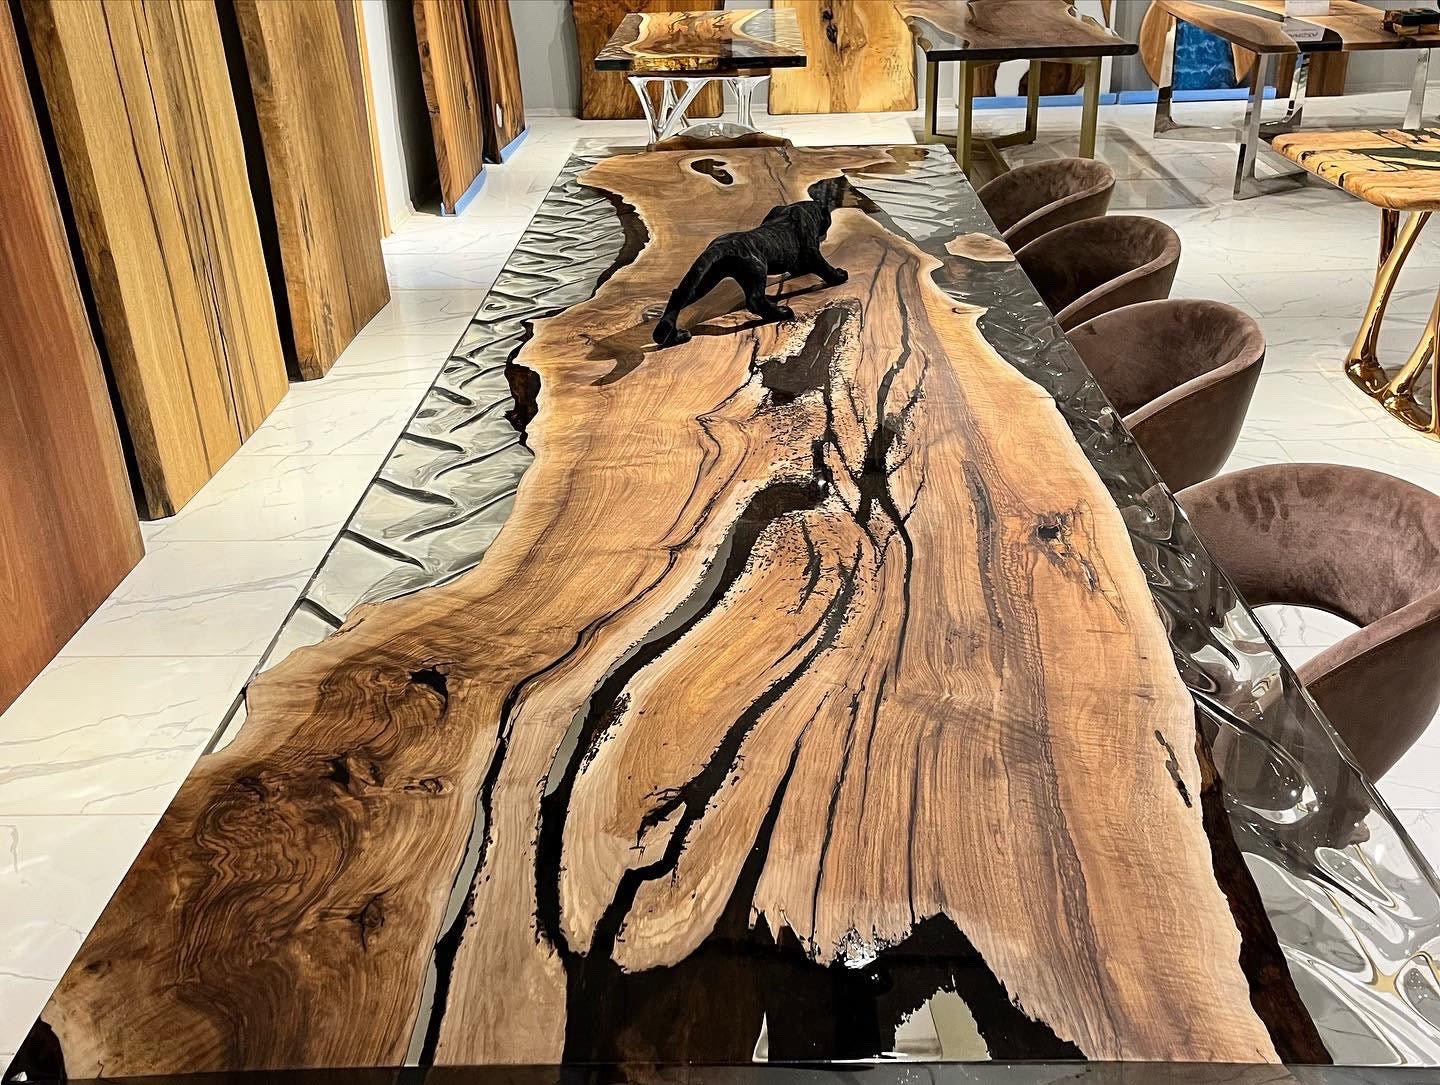 Oak Epoxy Table - Oak Table - Oak Dining Table by Tinella Wood